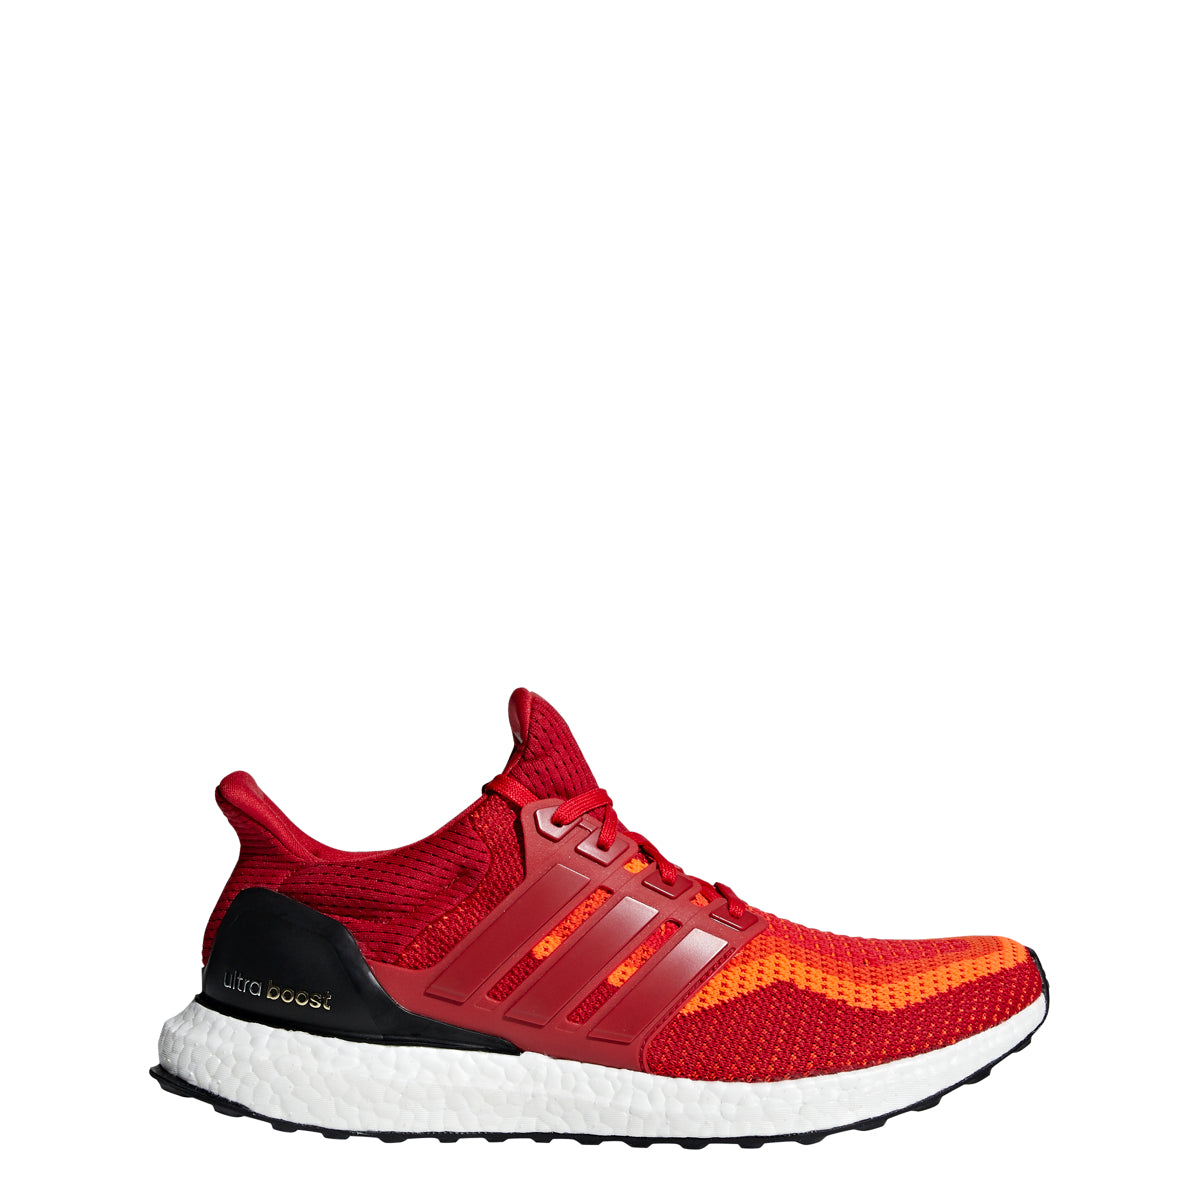 Adidas Men's Ultra Boost Running Shoes - Red Gradient - AQ4006 – Kratz Goods